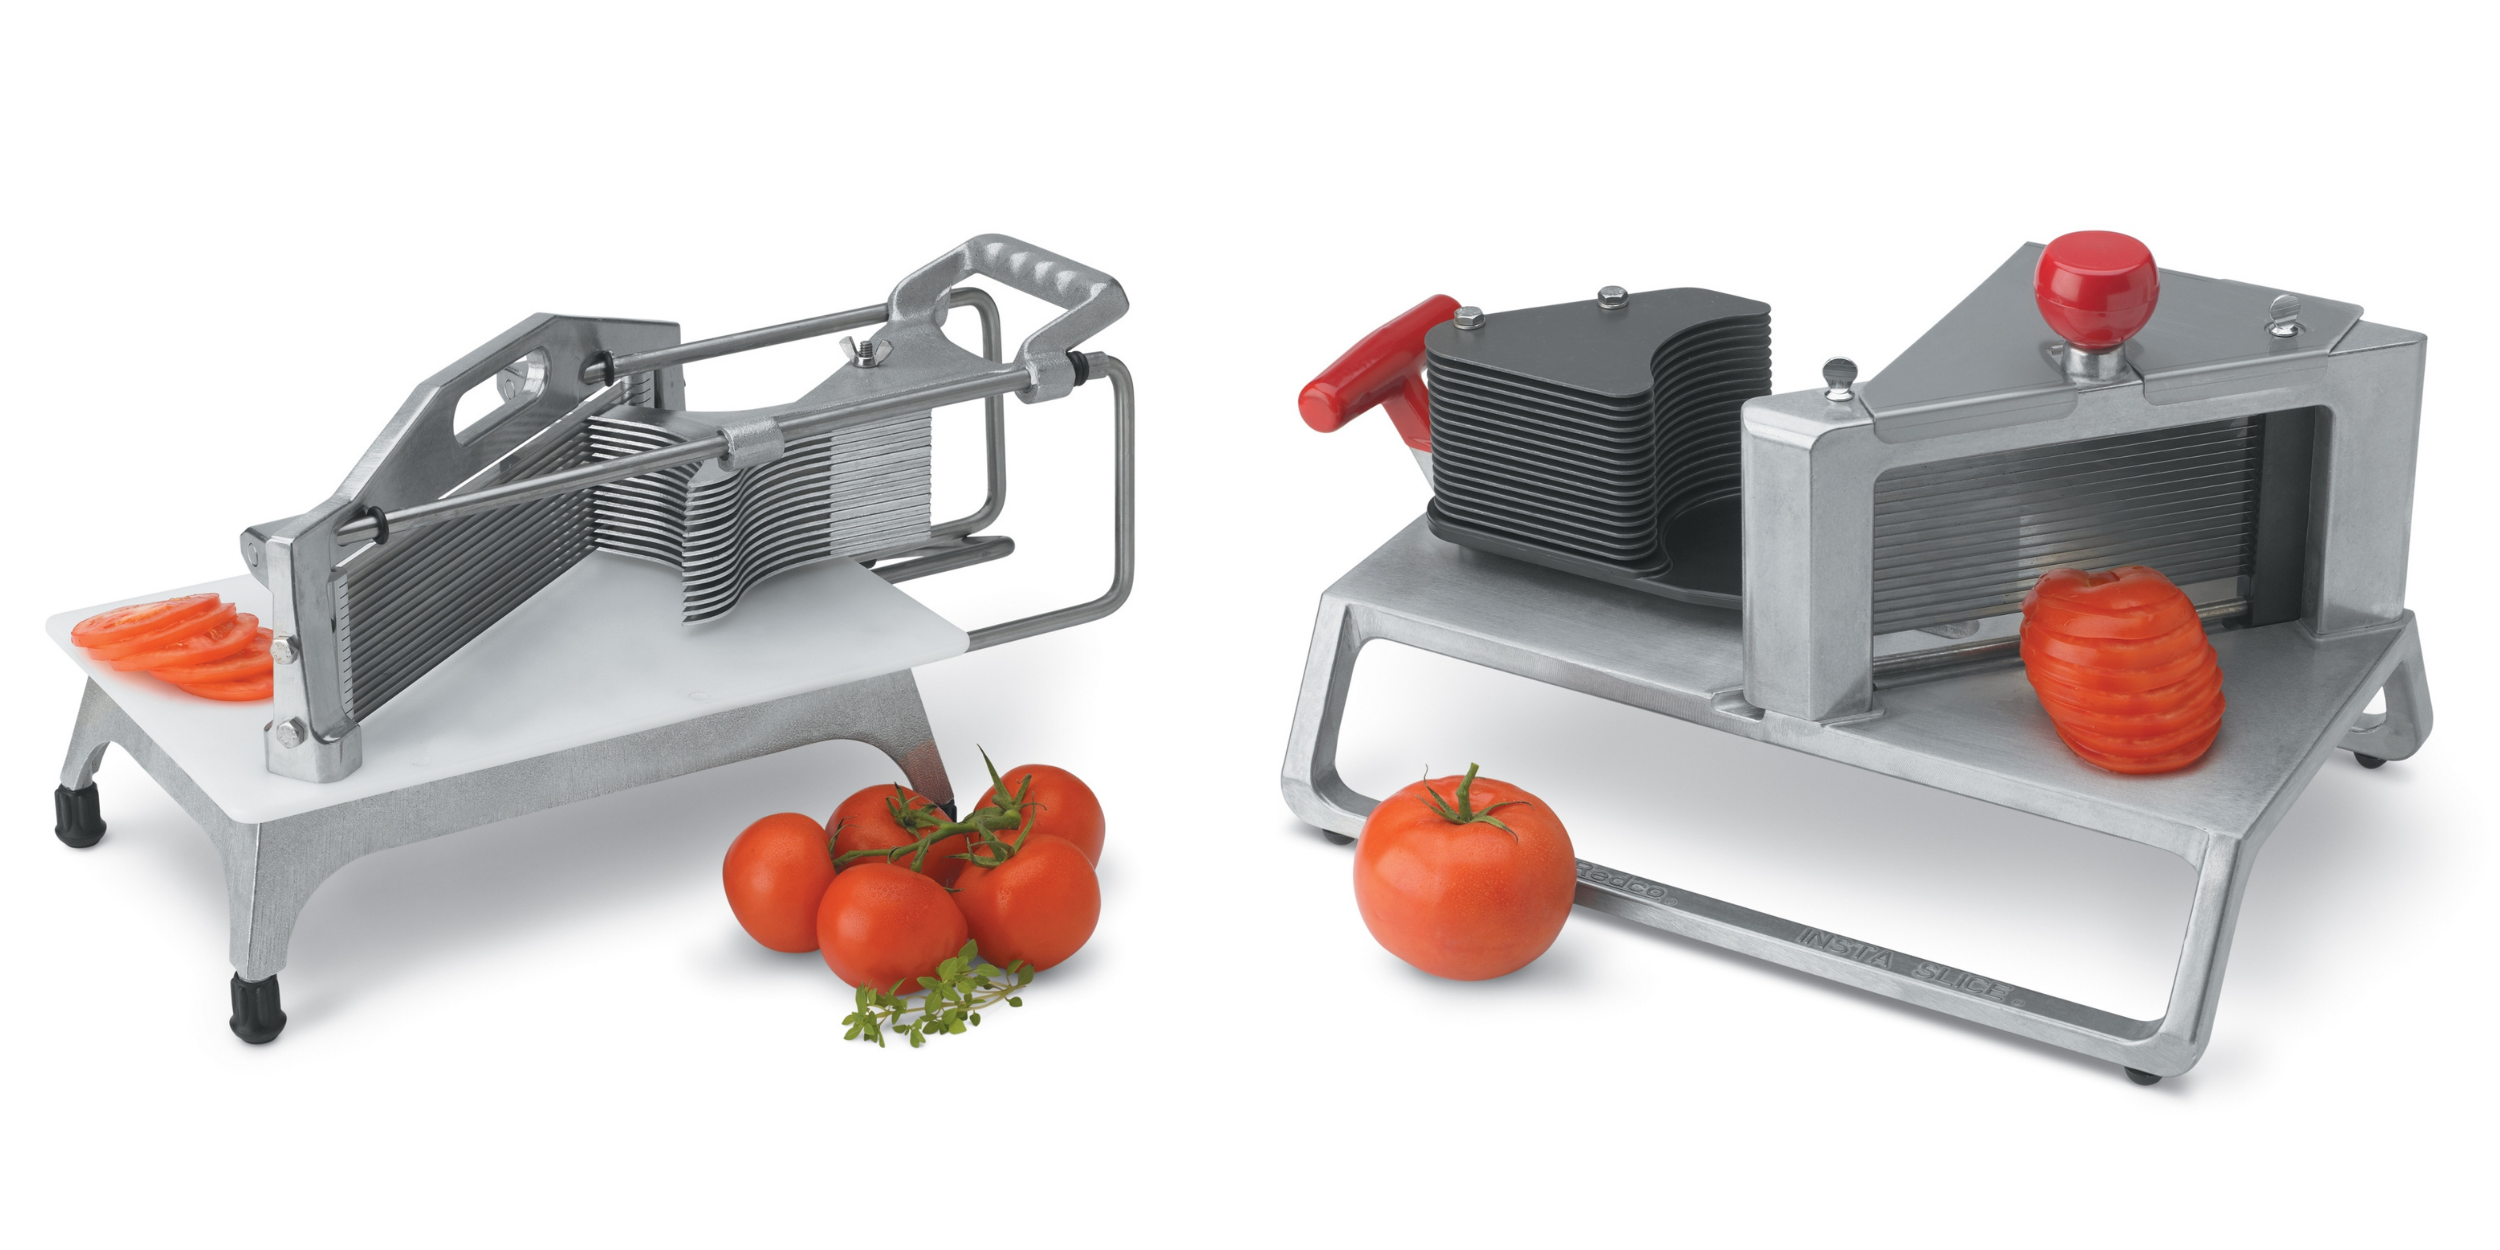 Manual tomato slicers